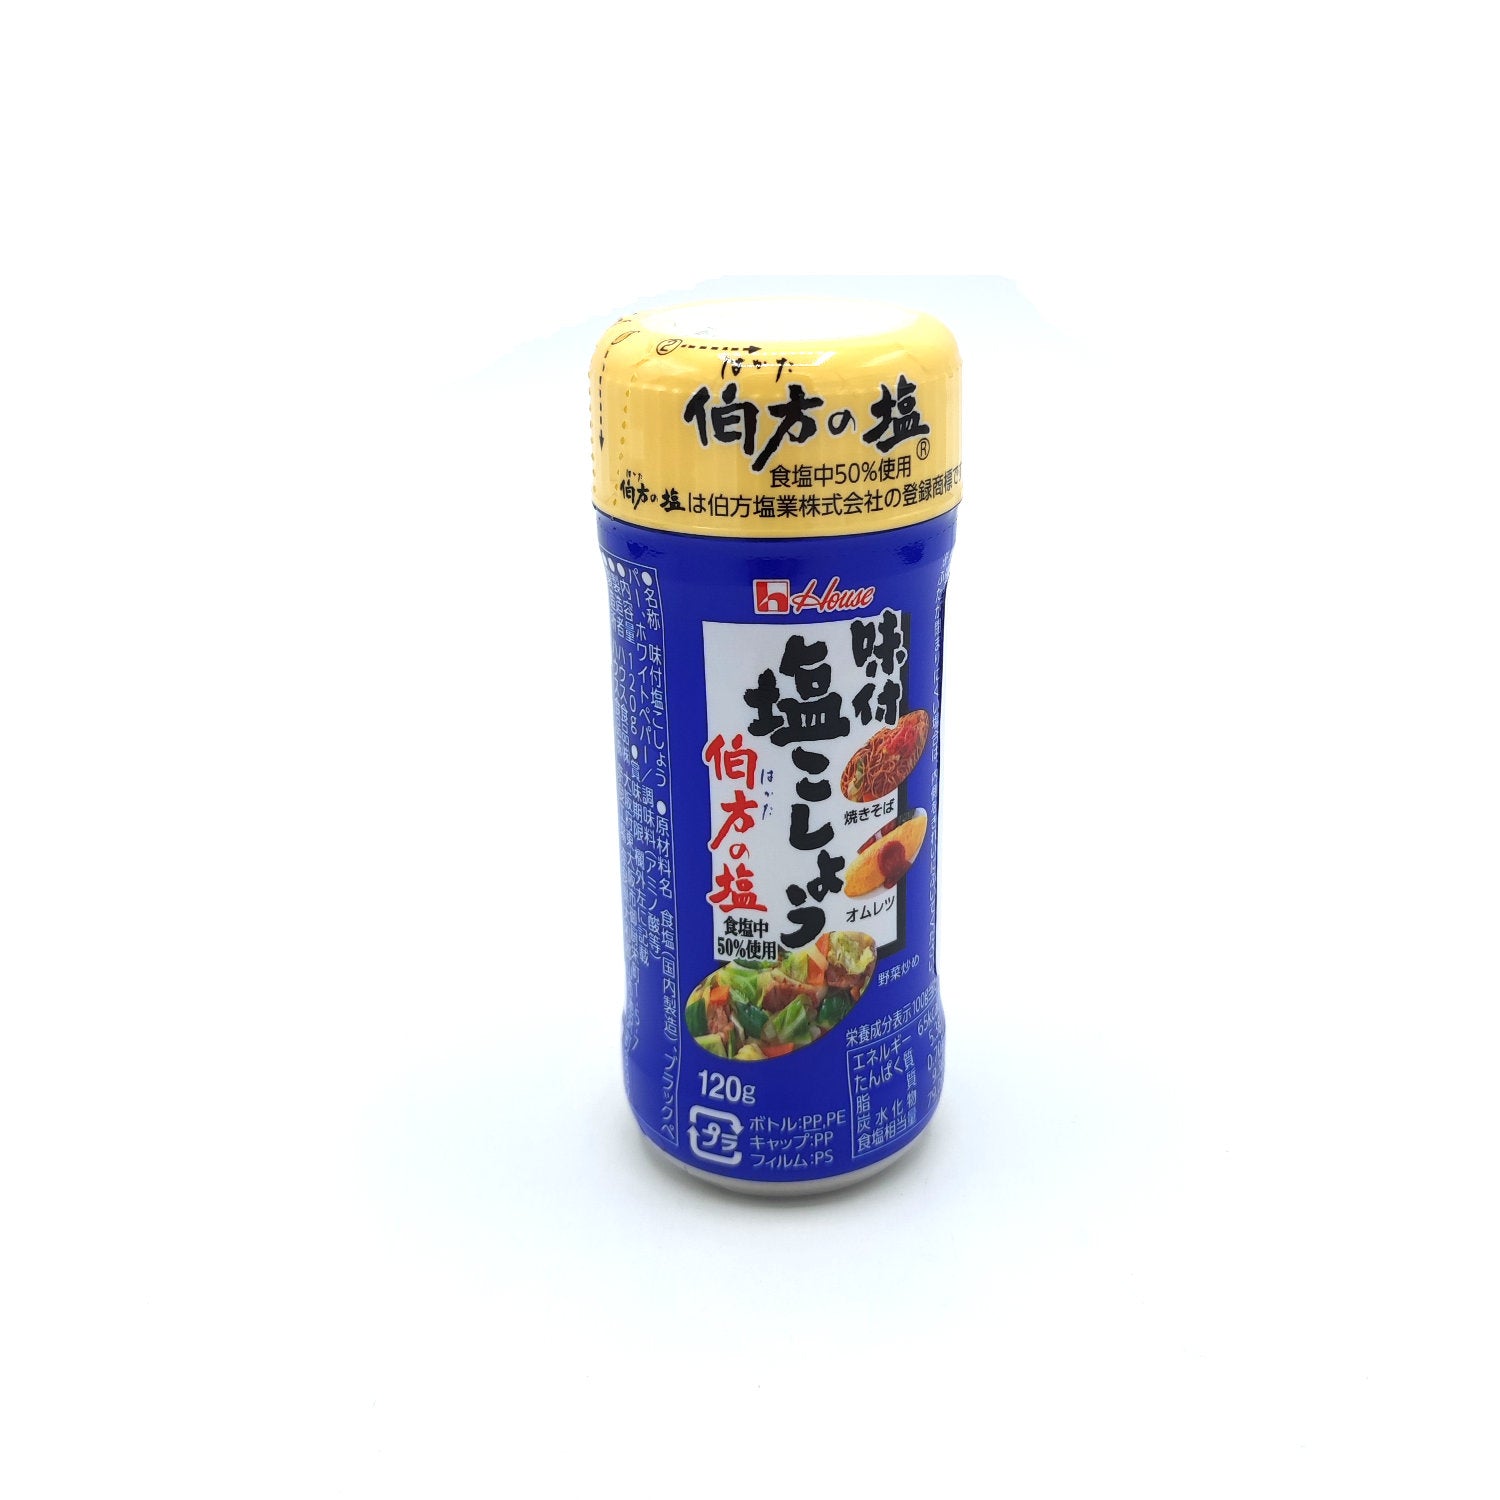 Ajittsuke Shio Kosho Salt & Pepper Mix 120g